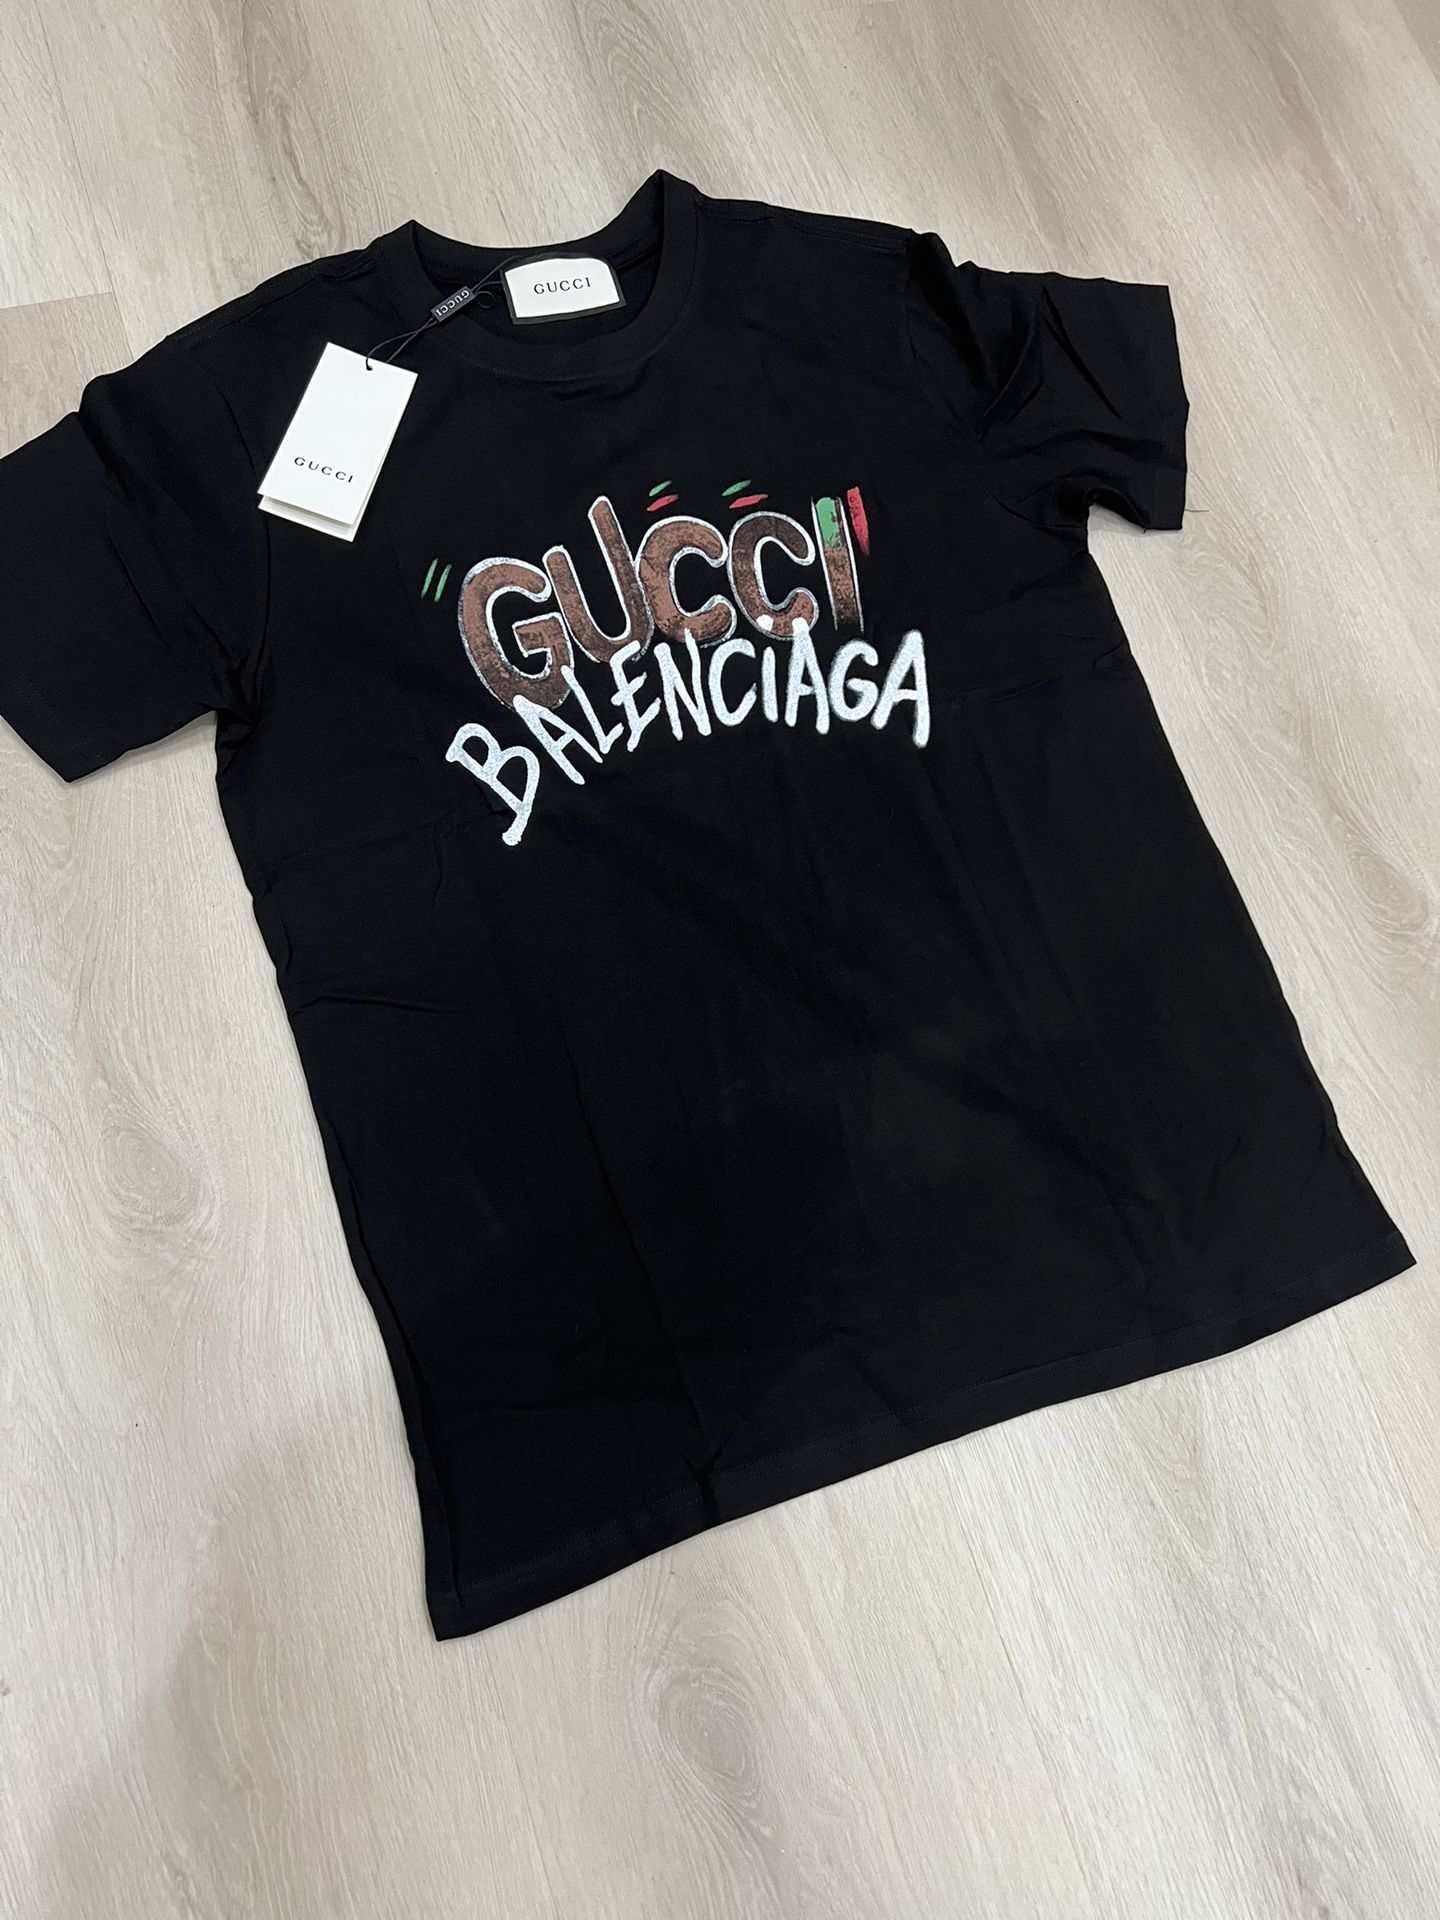 Gucci X Balenciaga T Shirt for Sale in San Bernardino, CA - OfferUp